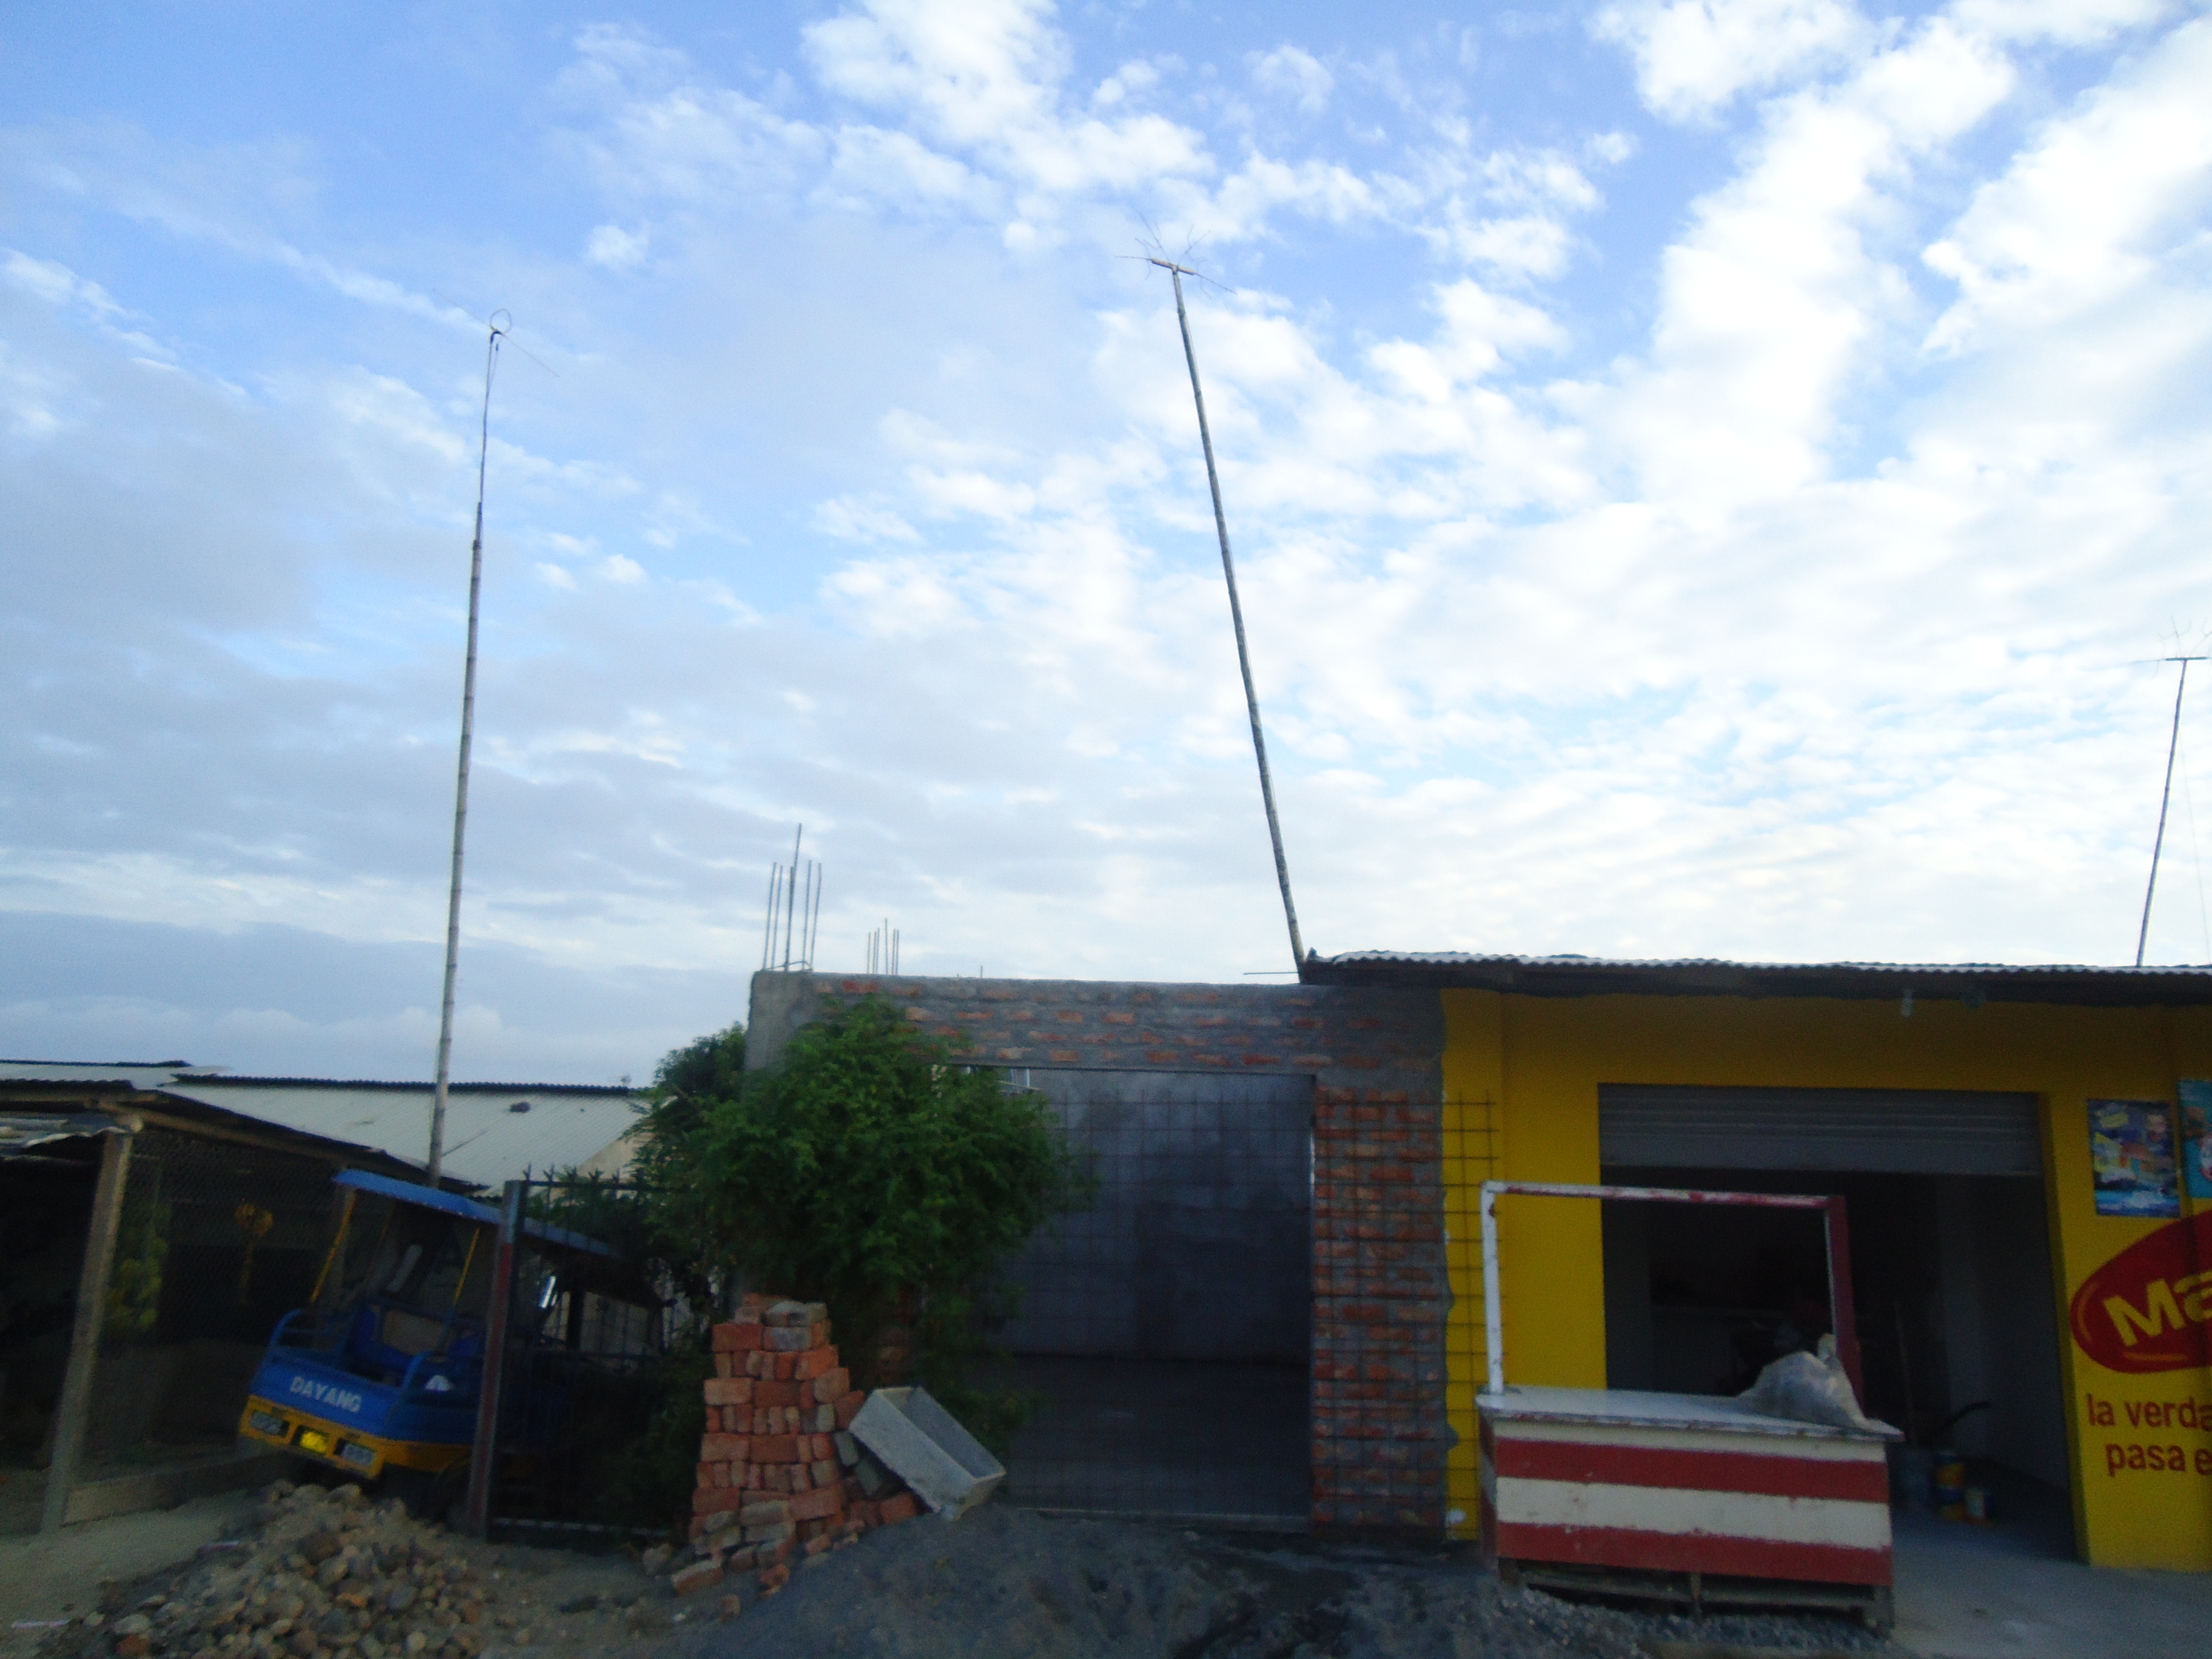 Foto: Garage - Atacames (Esmeraldas), Ecuador